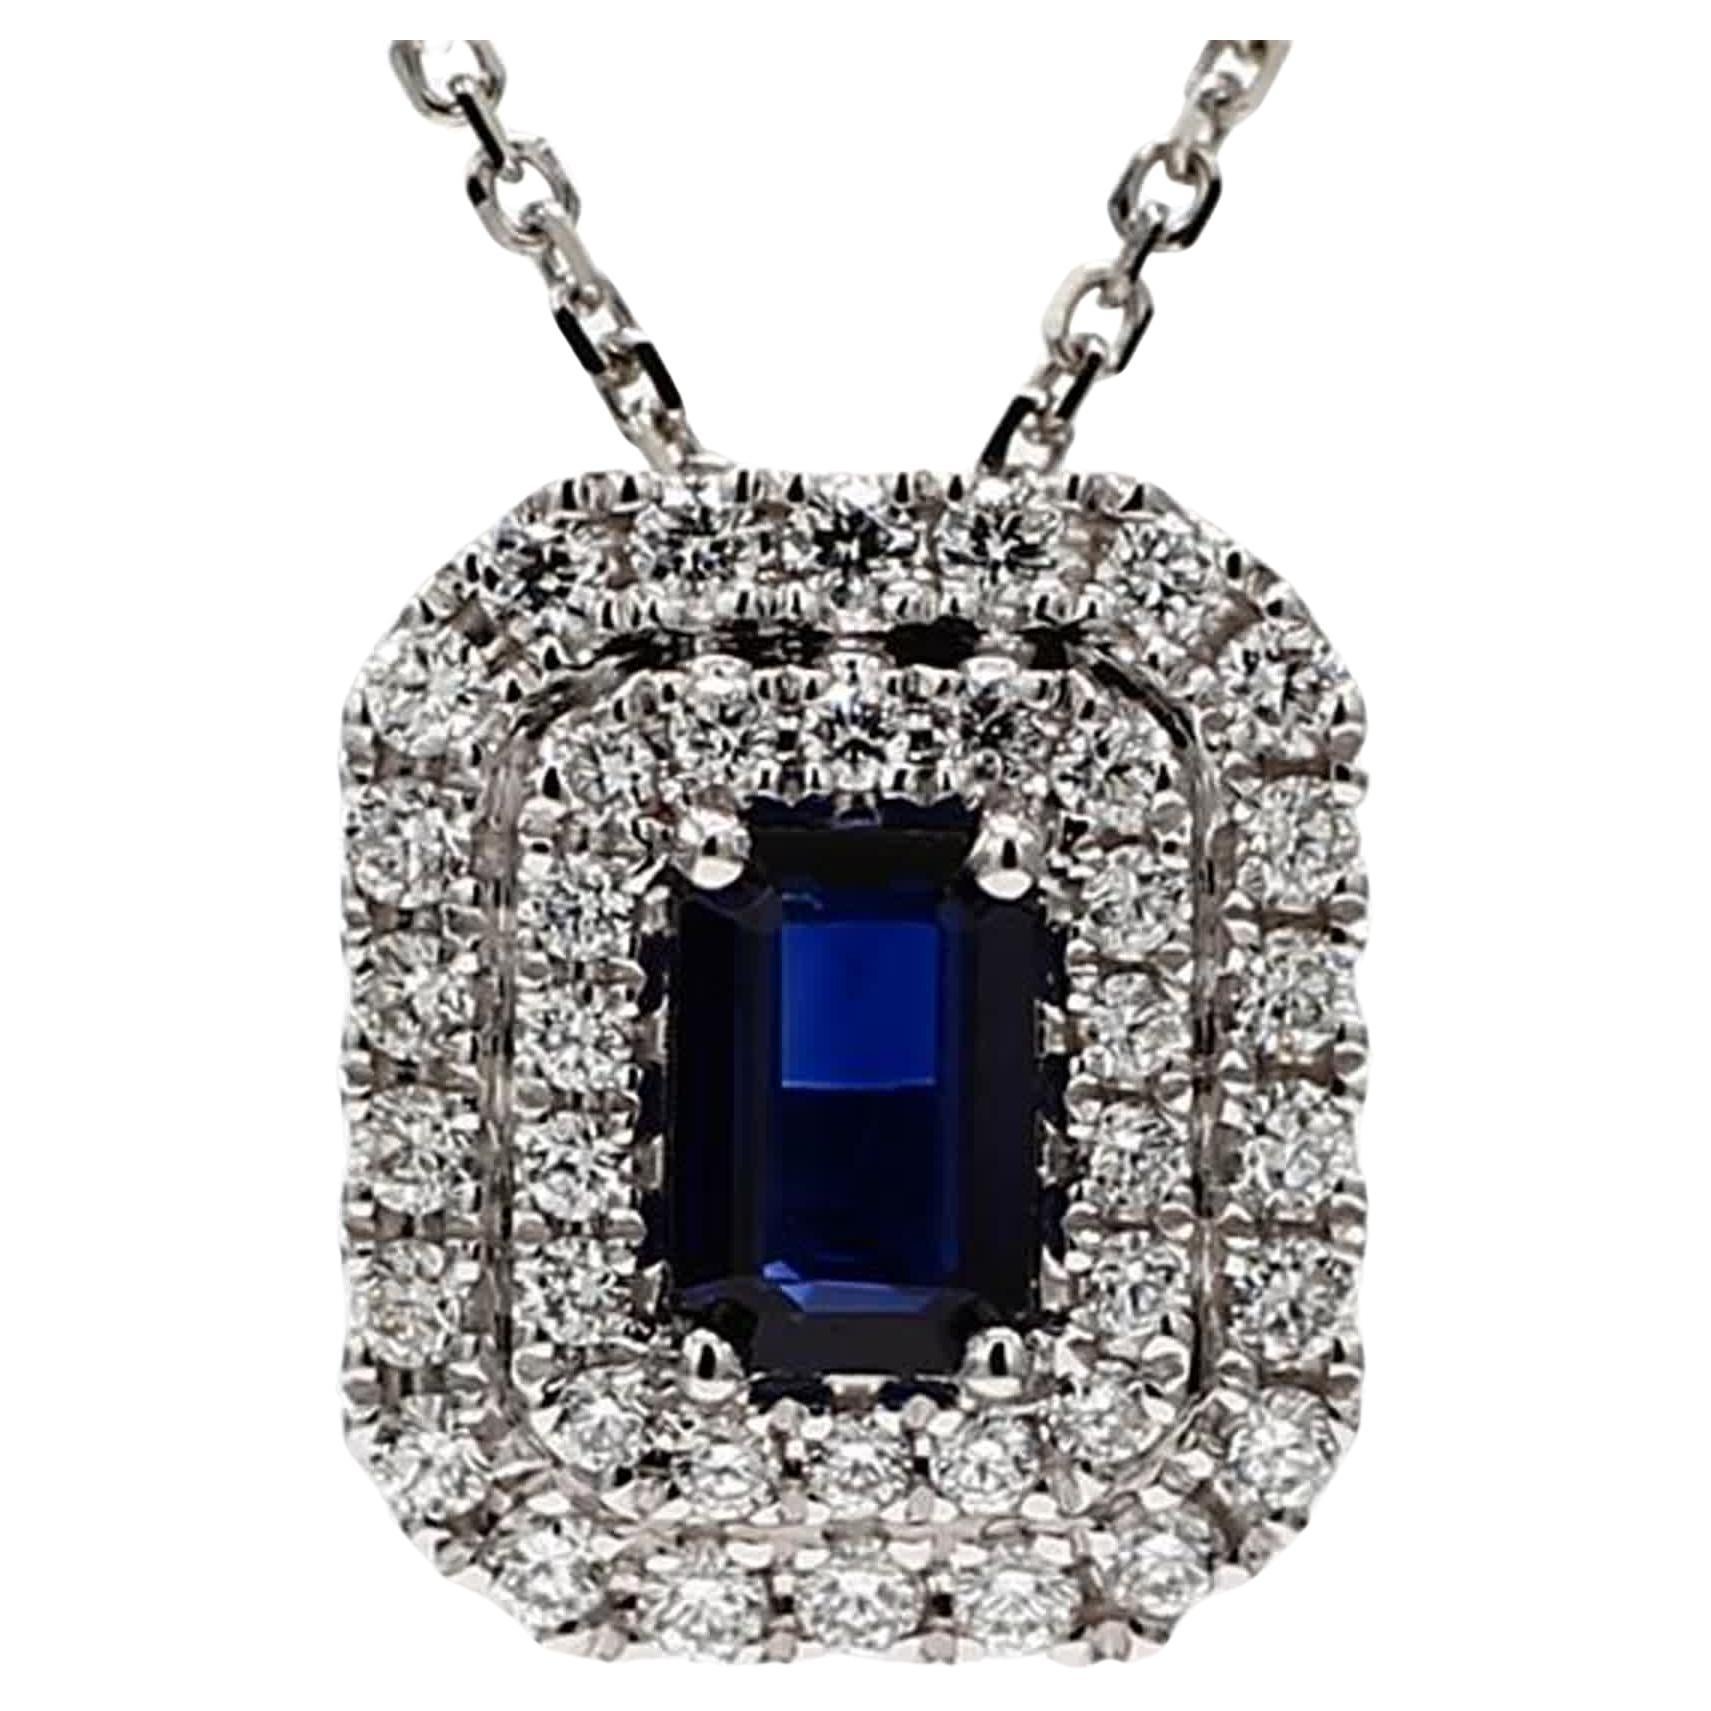 Pendentif en or avec saphir bleu naturel de taille émeraude et diamant blanc de 1,04 carat poids total